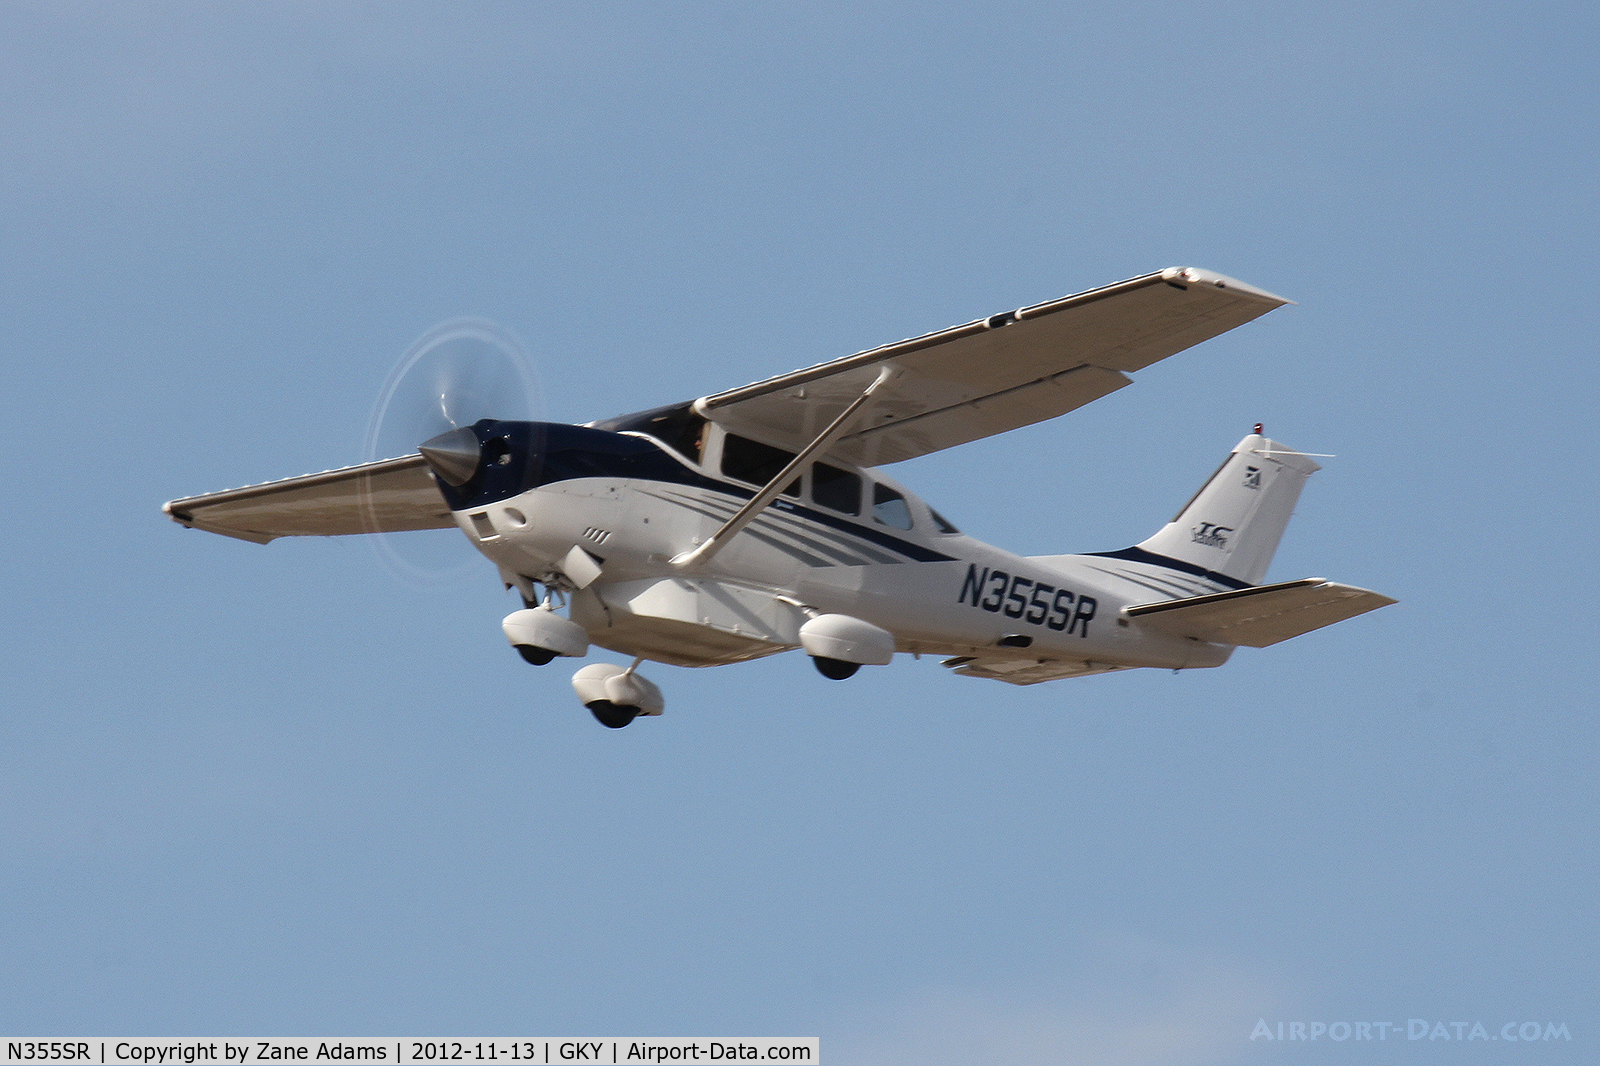 N355SR, 2004 Cessna T206H Turbo Stationair C/N T20608458, Departing Arlington Municipal Airport.